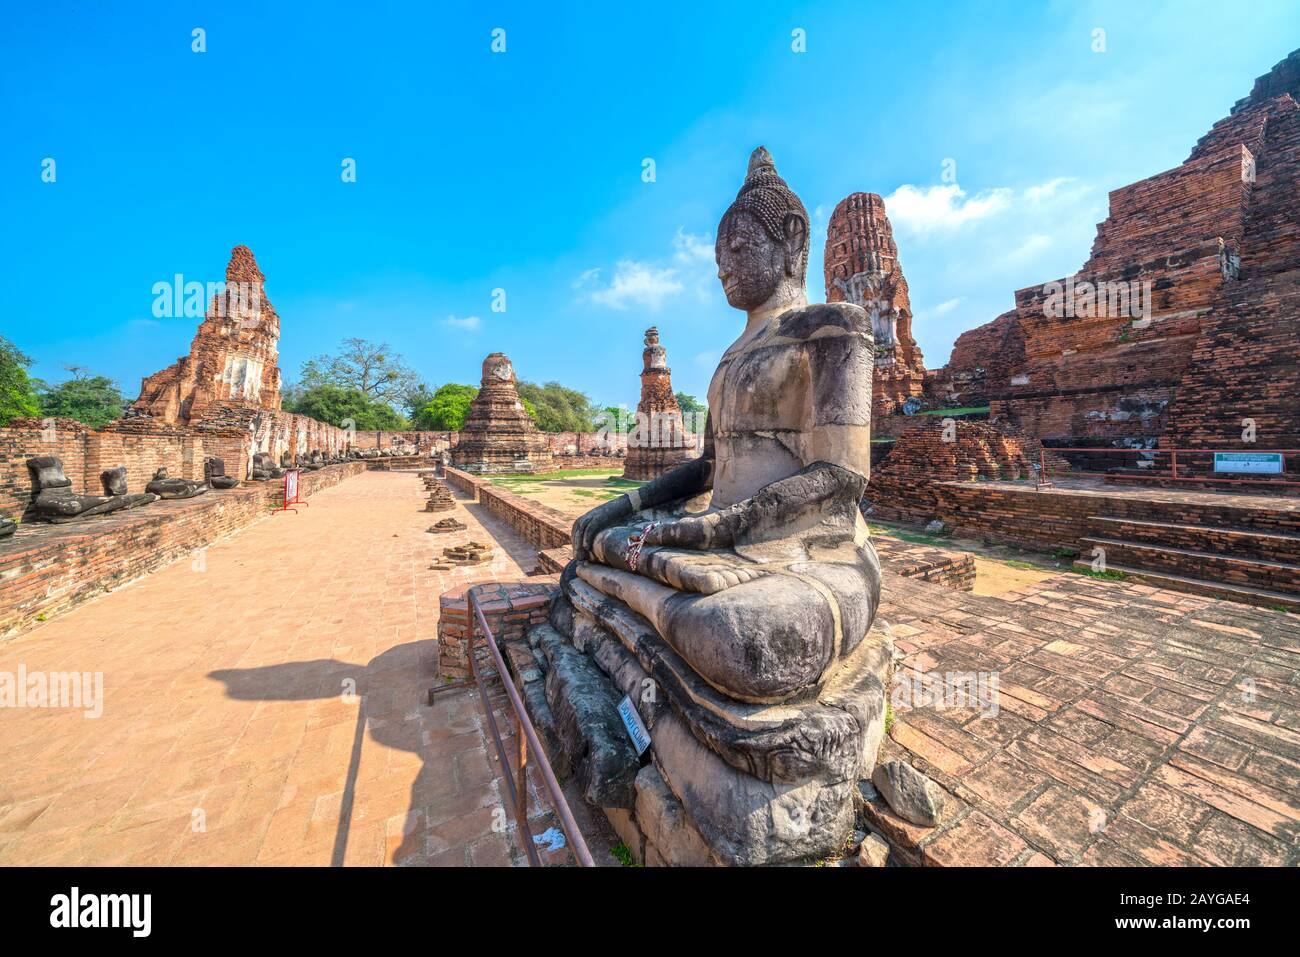 Wat Mahathat Temple, Ayutthaya.  Bangkok province, Thailand Stock Photo